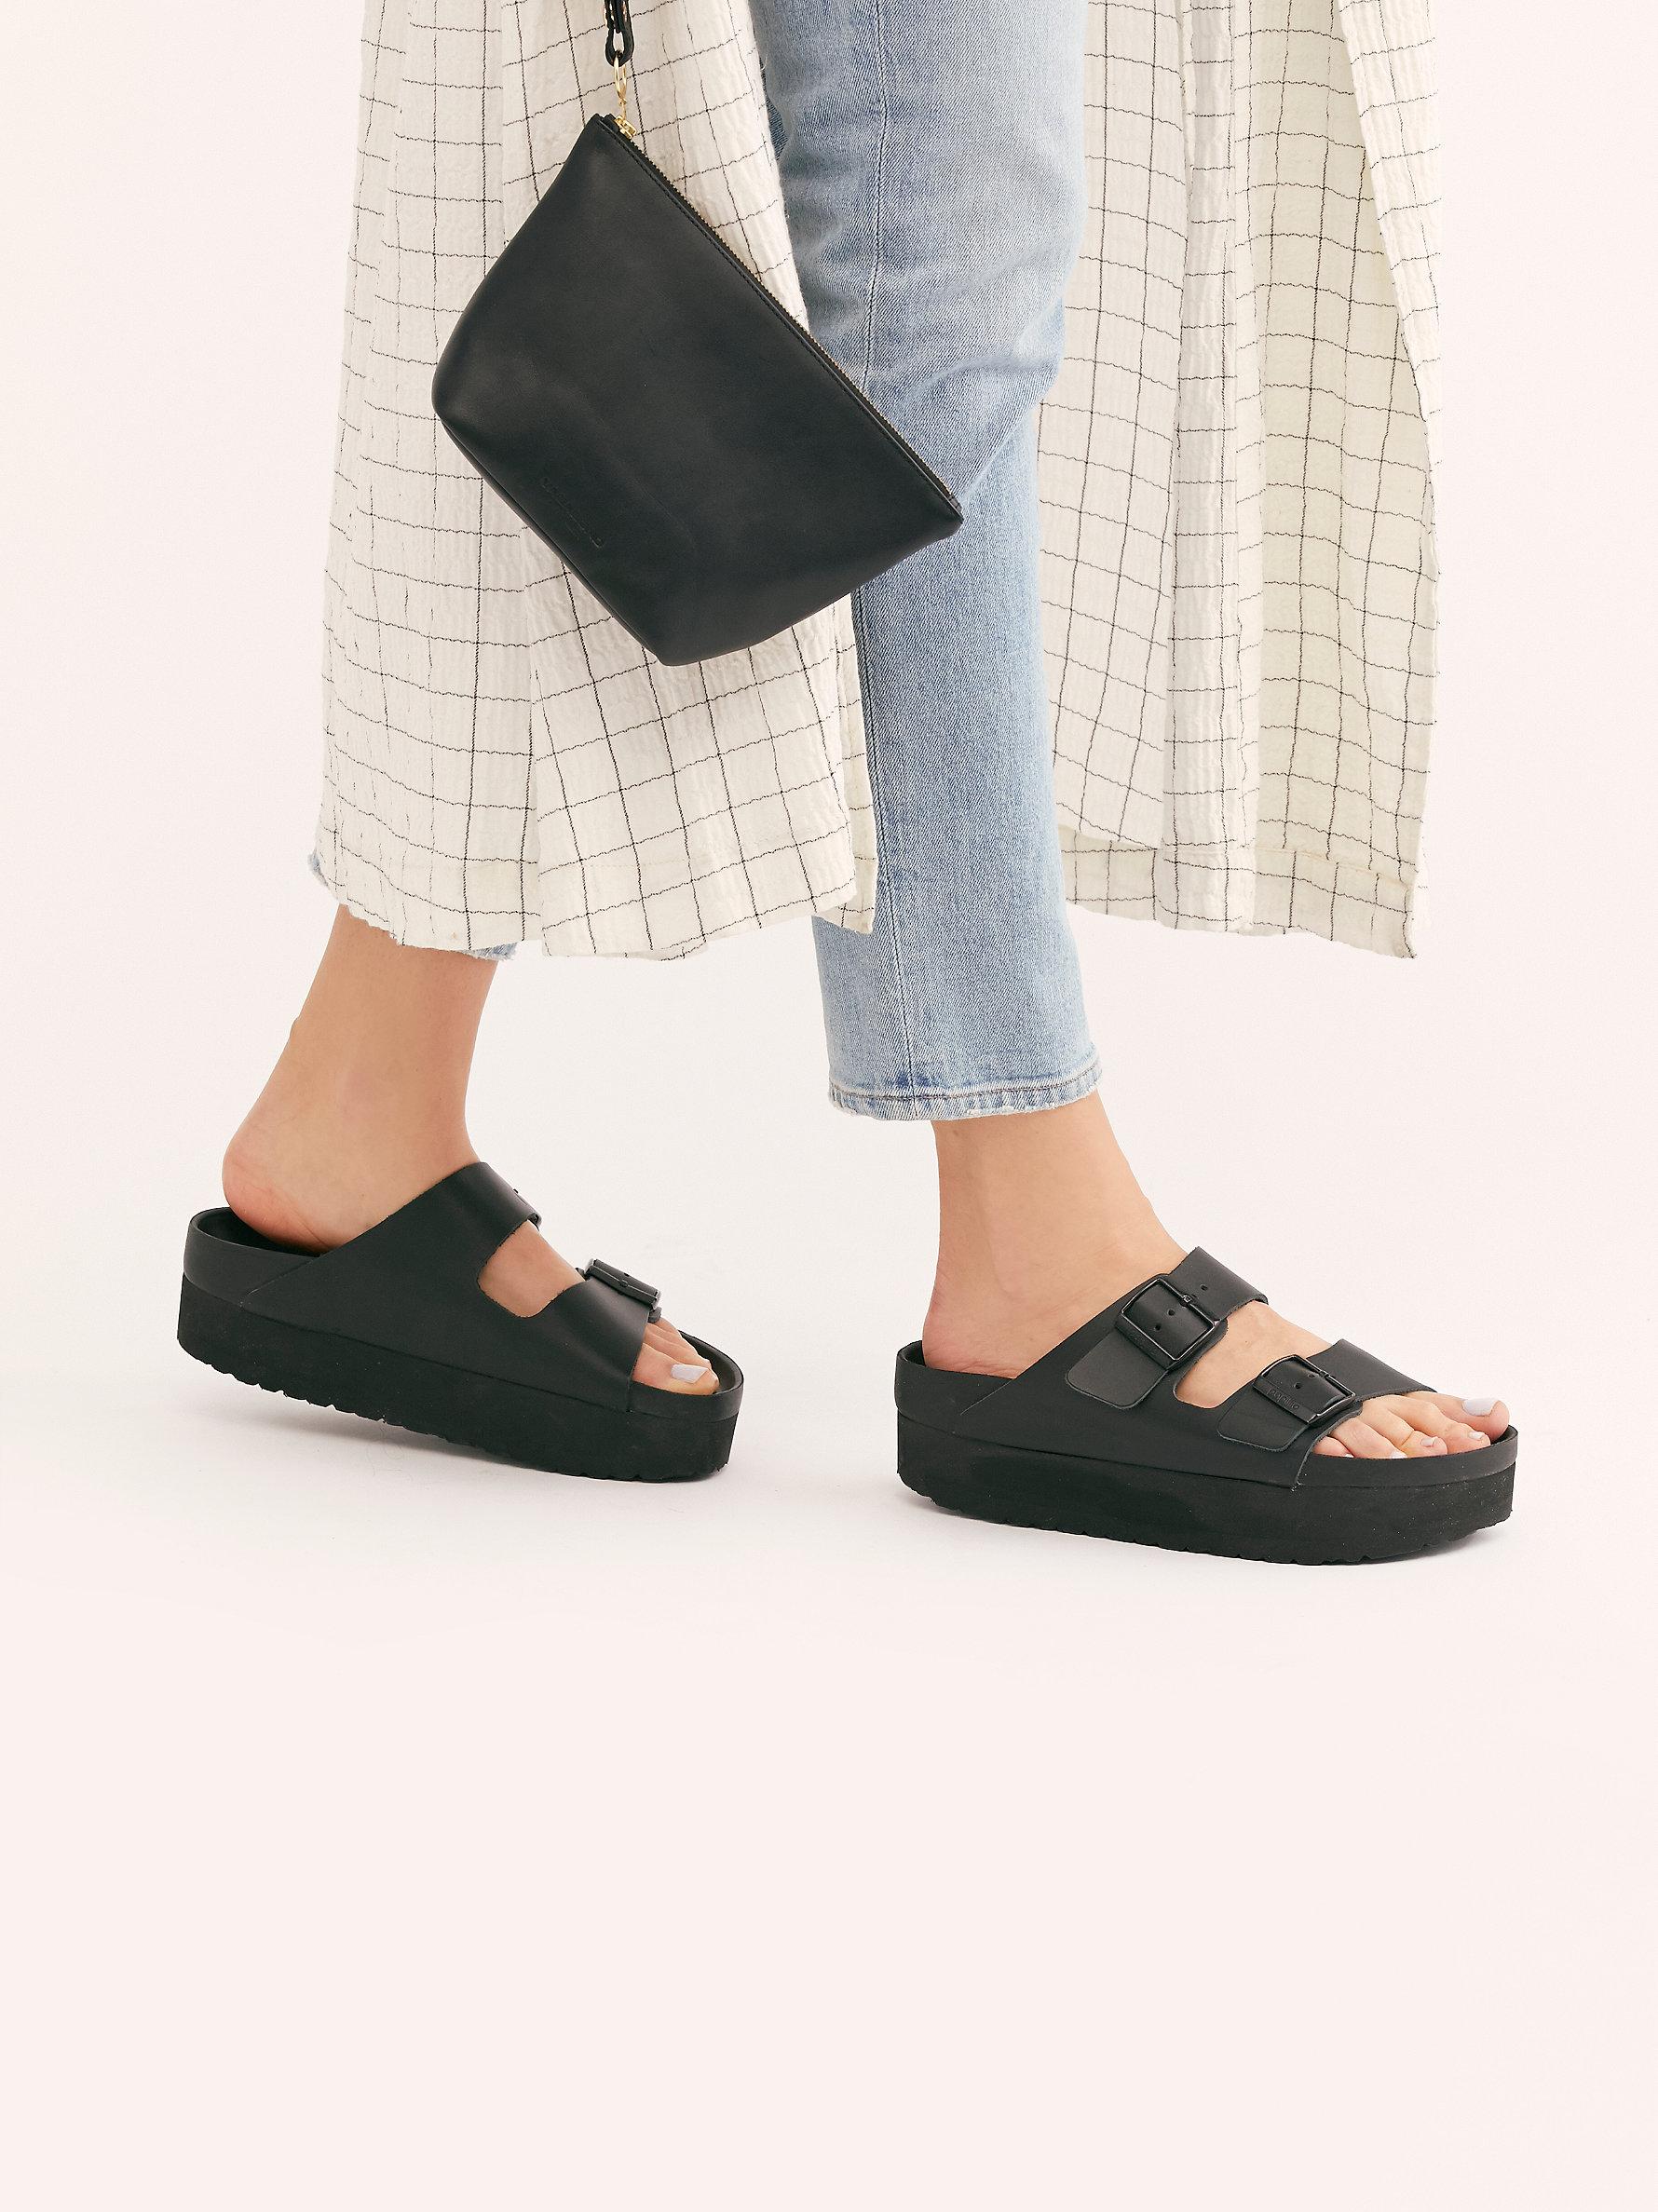 Free People Arizona Platform Exquisite Birkenstock Sandals in Black | Lyst